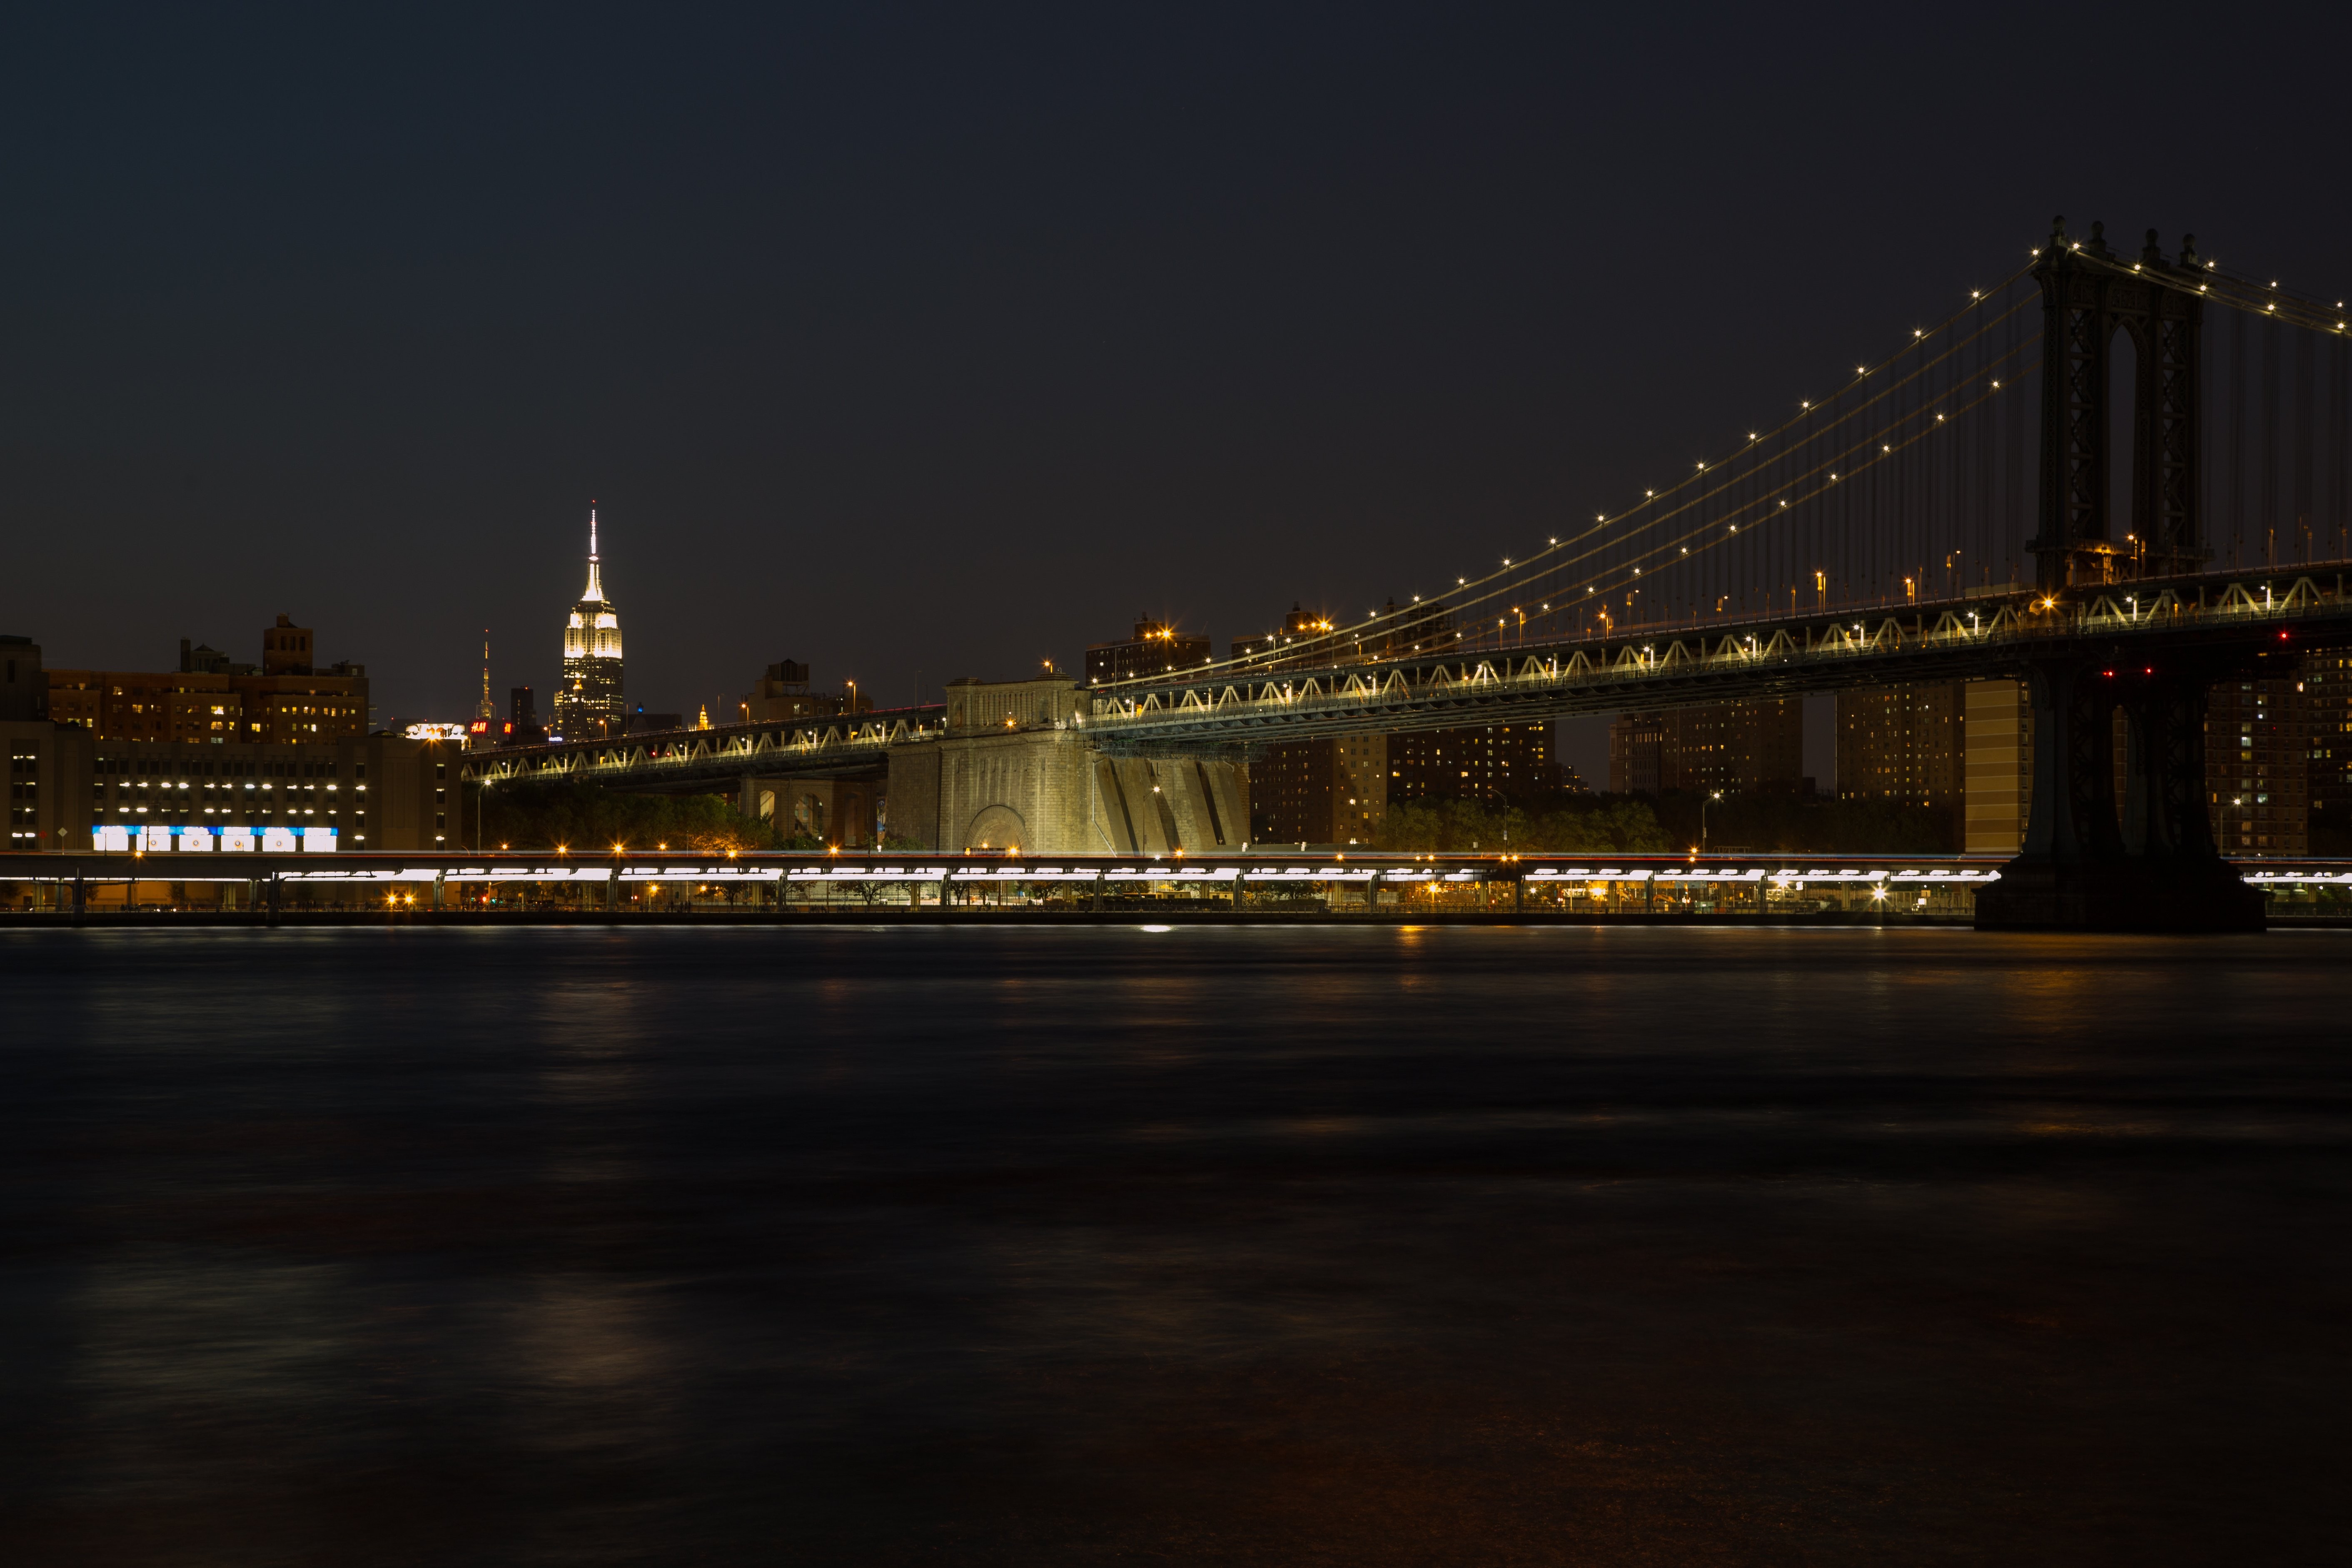 Foto di skyline notturno di New York City